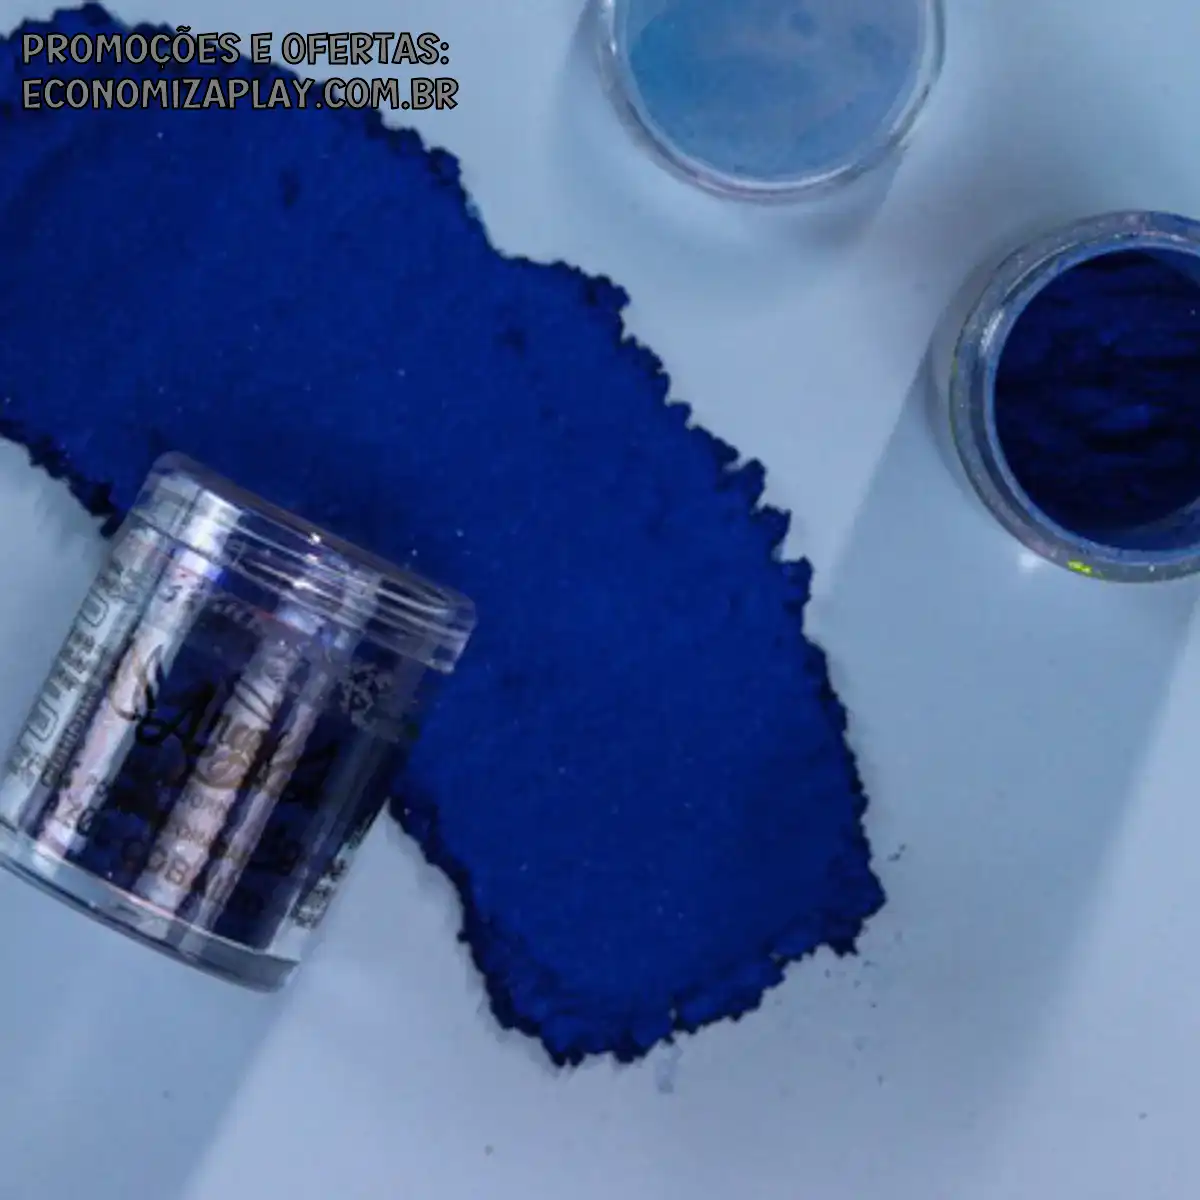 Pó de decoração Azul Cobalto 4g vendido por peso o volume do produto varia conforme a cor pó de decoração confeitaria